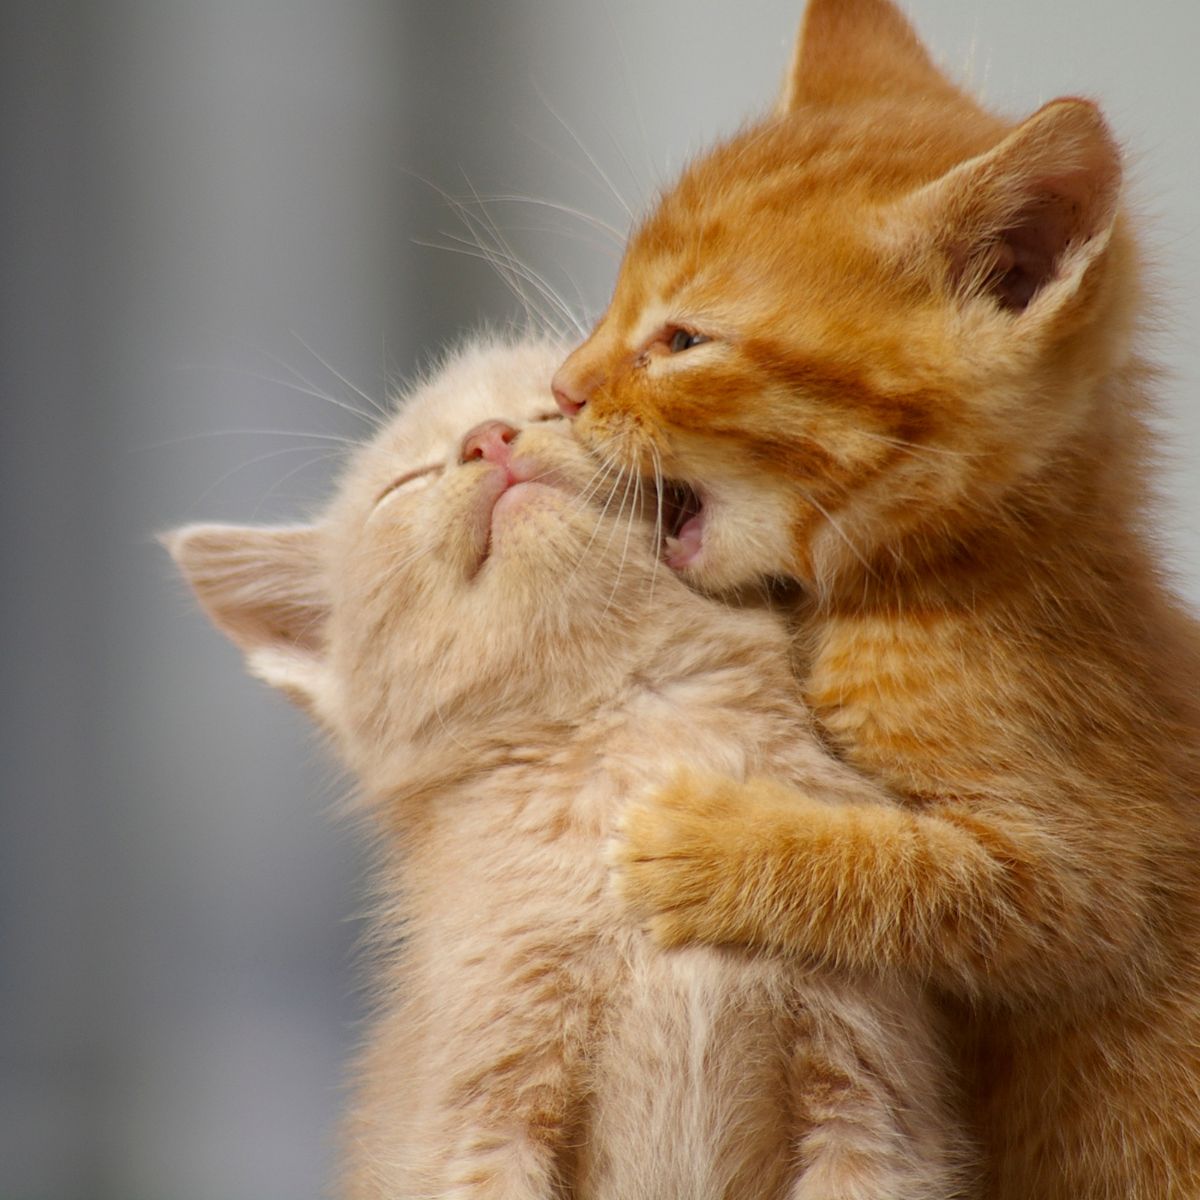 kitten kissing other kitten